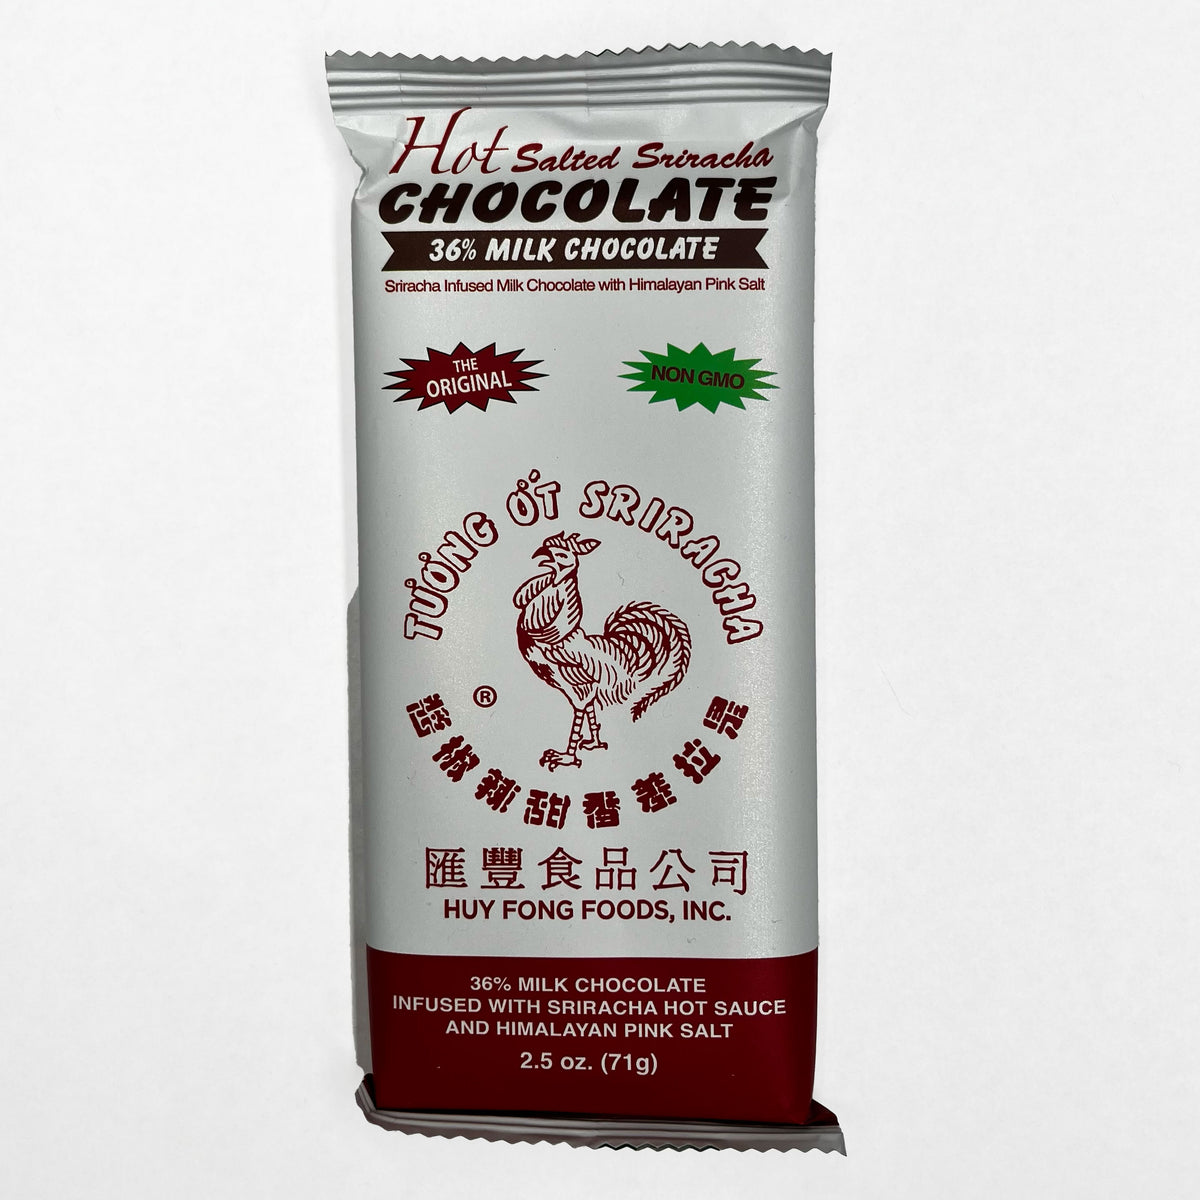 Hot Salted Siracha Chocolate 36% Milk Chocolate